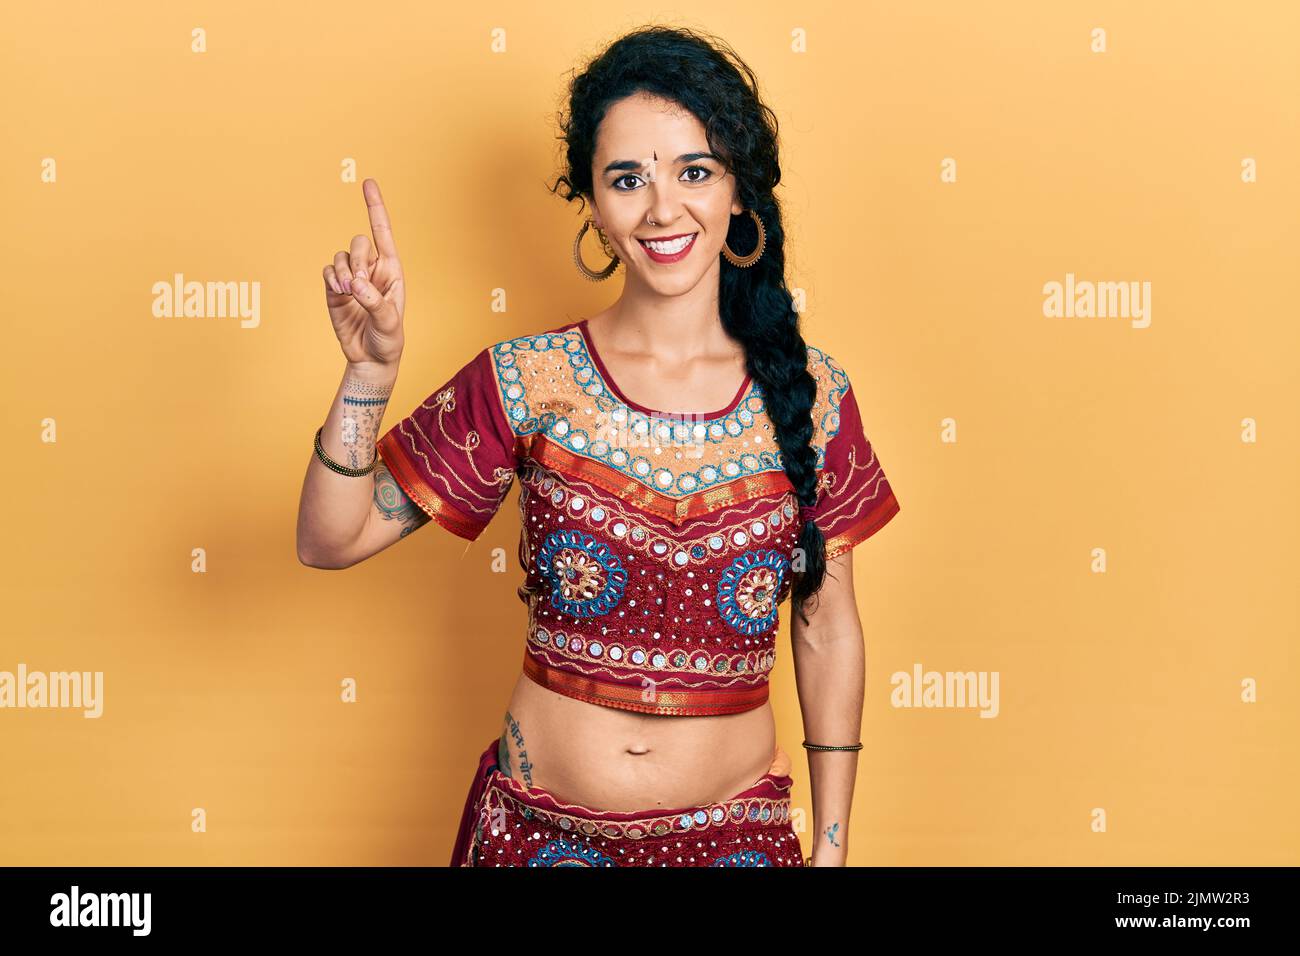 Junge Frau in Bindi- und bollywood-Kleidung, die mit dem Finger Nummer eins zeigt und zeigt, während sie selbstbewusst und glücklich lächelt. Stockfoto